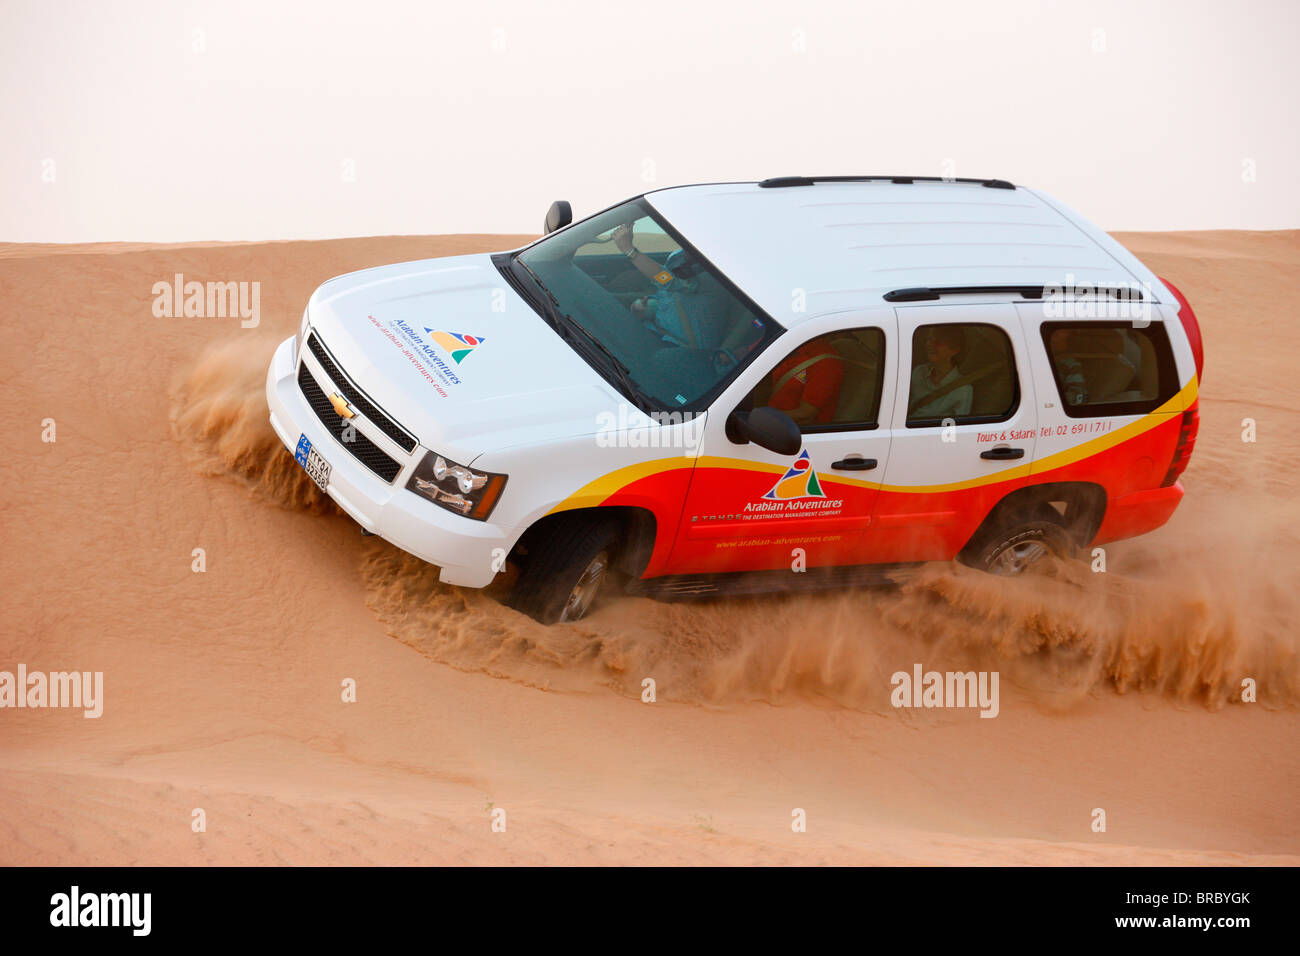 Safari dans le désert. Dubaï, Émirats arabes unis Banque D'Images